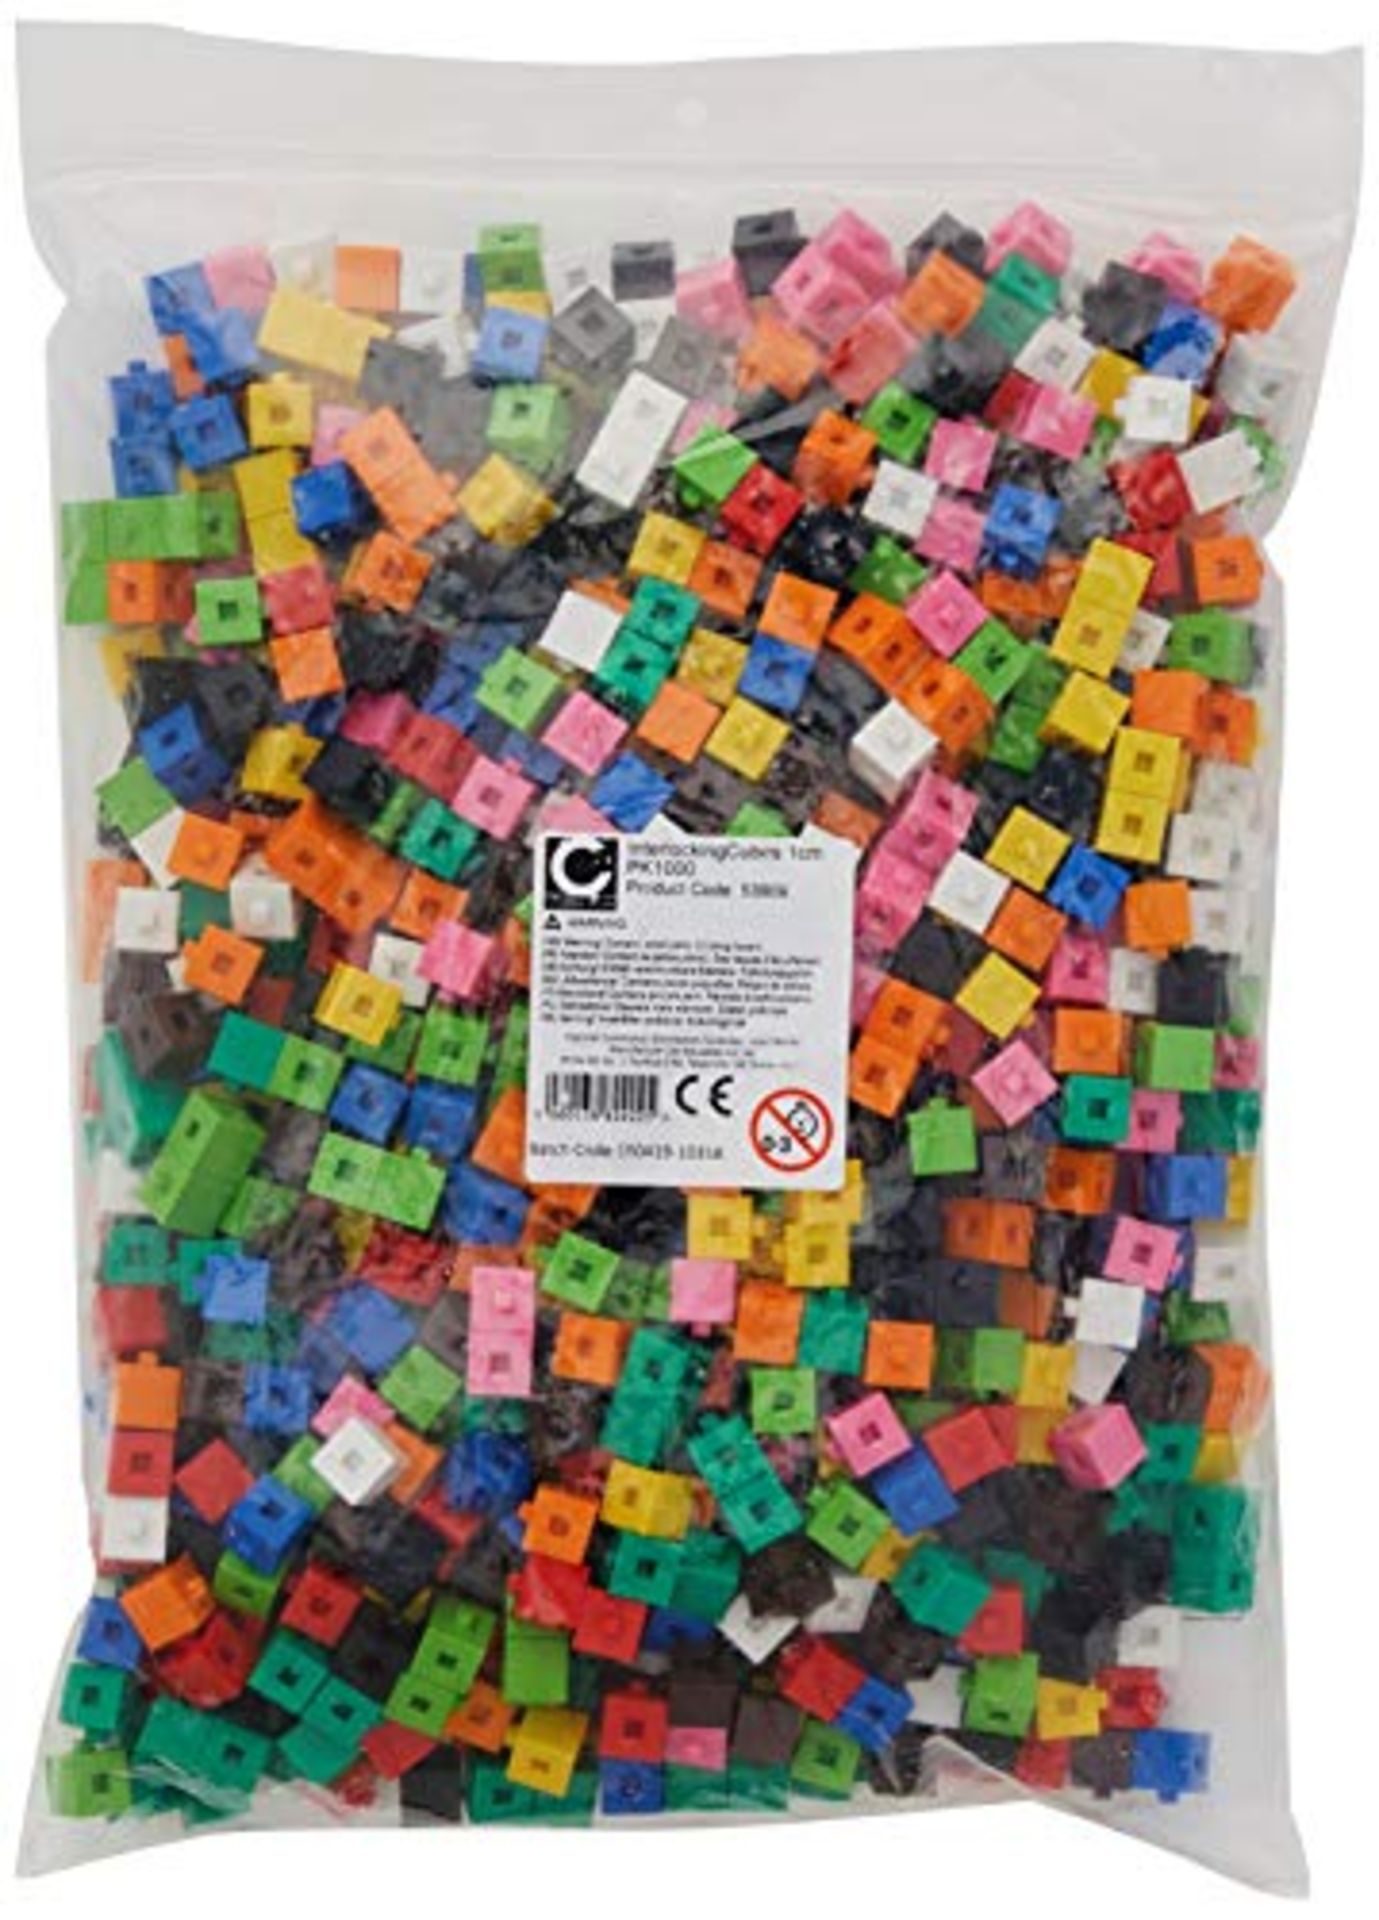 EDX Education 53909 Interlocking Cube, Set of 1000 x 1 cm cubes